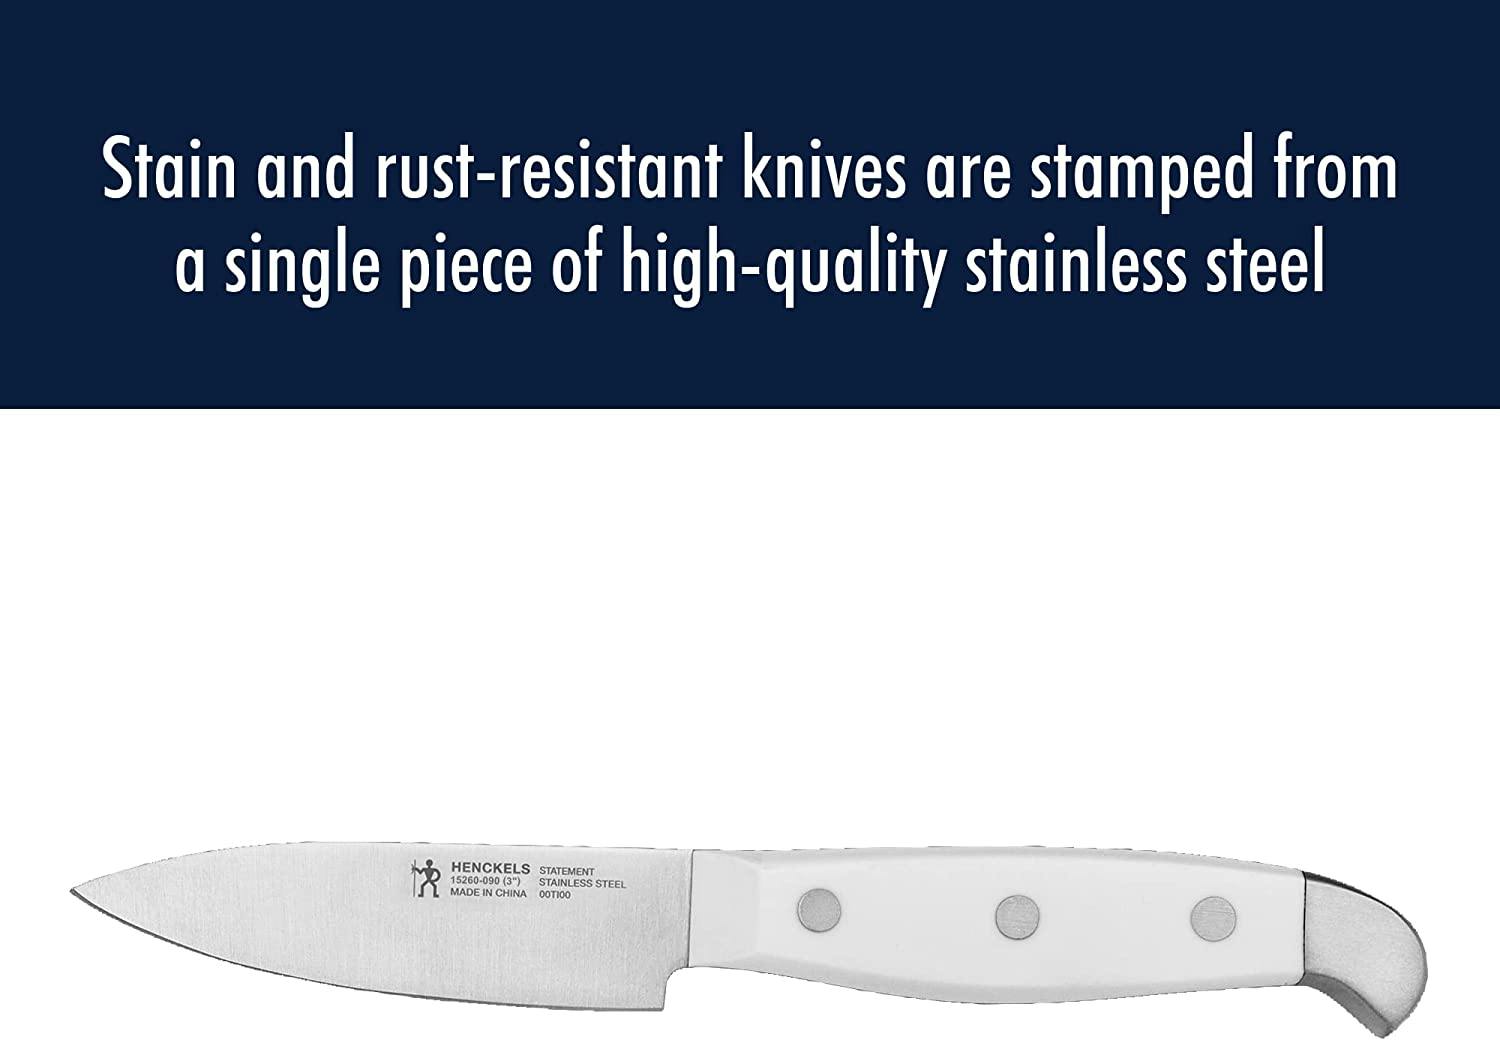 Henckels Statement 15-pc Knife Block Set - White Handles